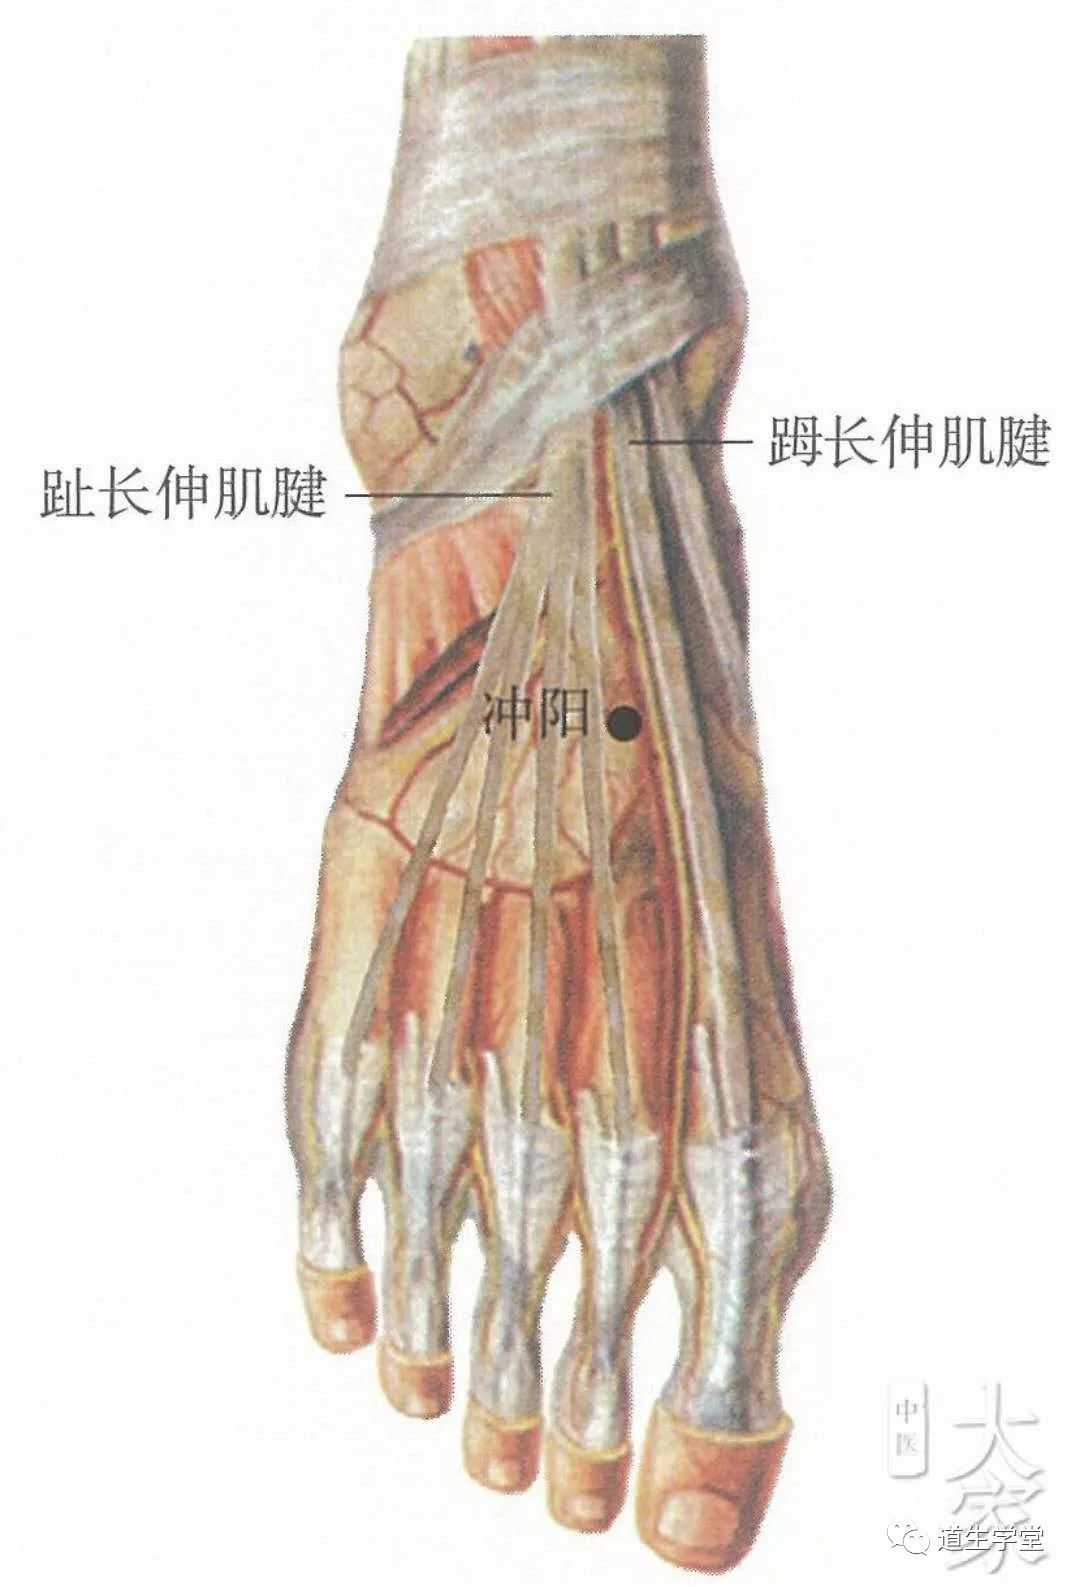 冲阳穴位于人体的足背最高处,当拇长伸肌腱和趾长伸肌腱之间,足背